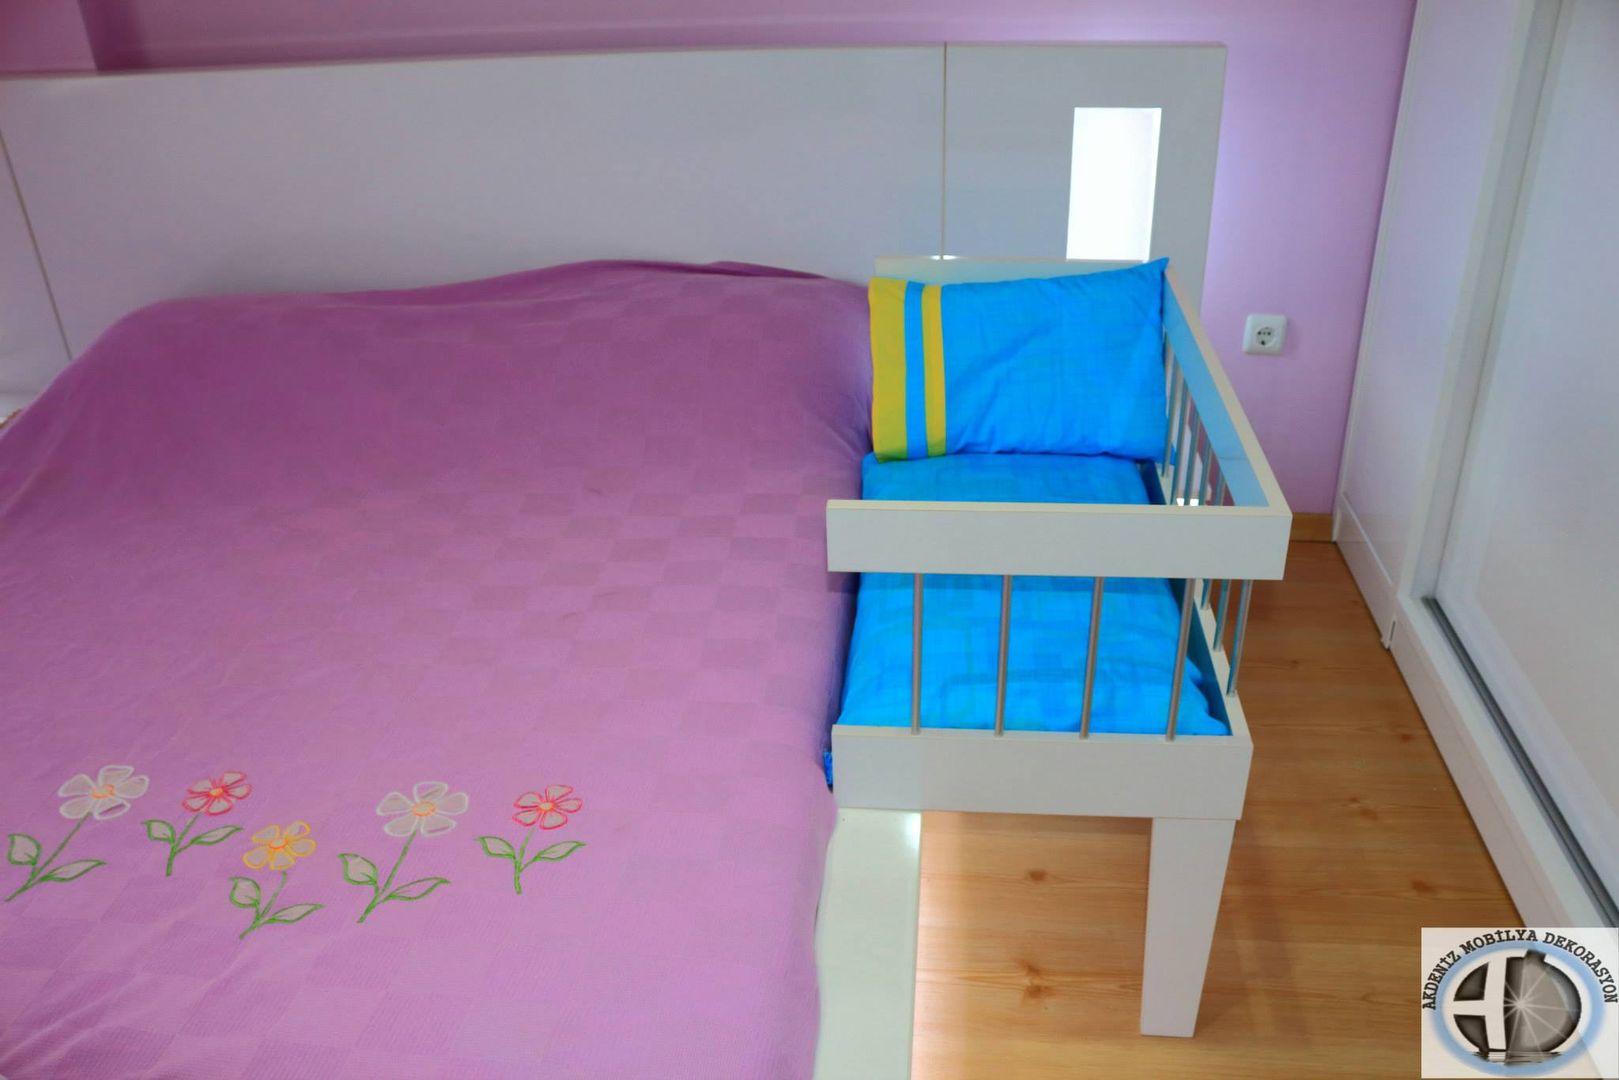 Anne Yanı Beşiği, Akdeniz Dekorasyon Akdeniz Dekorasyon Modern Kid's Room Beds & cribs